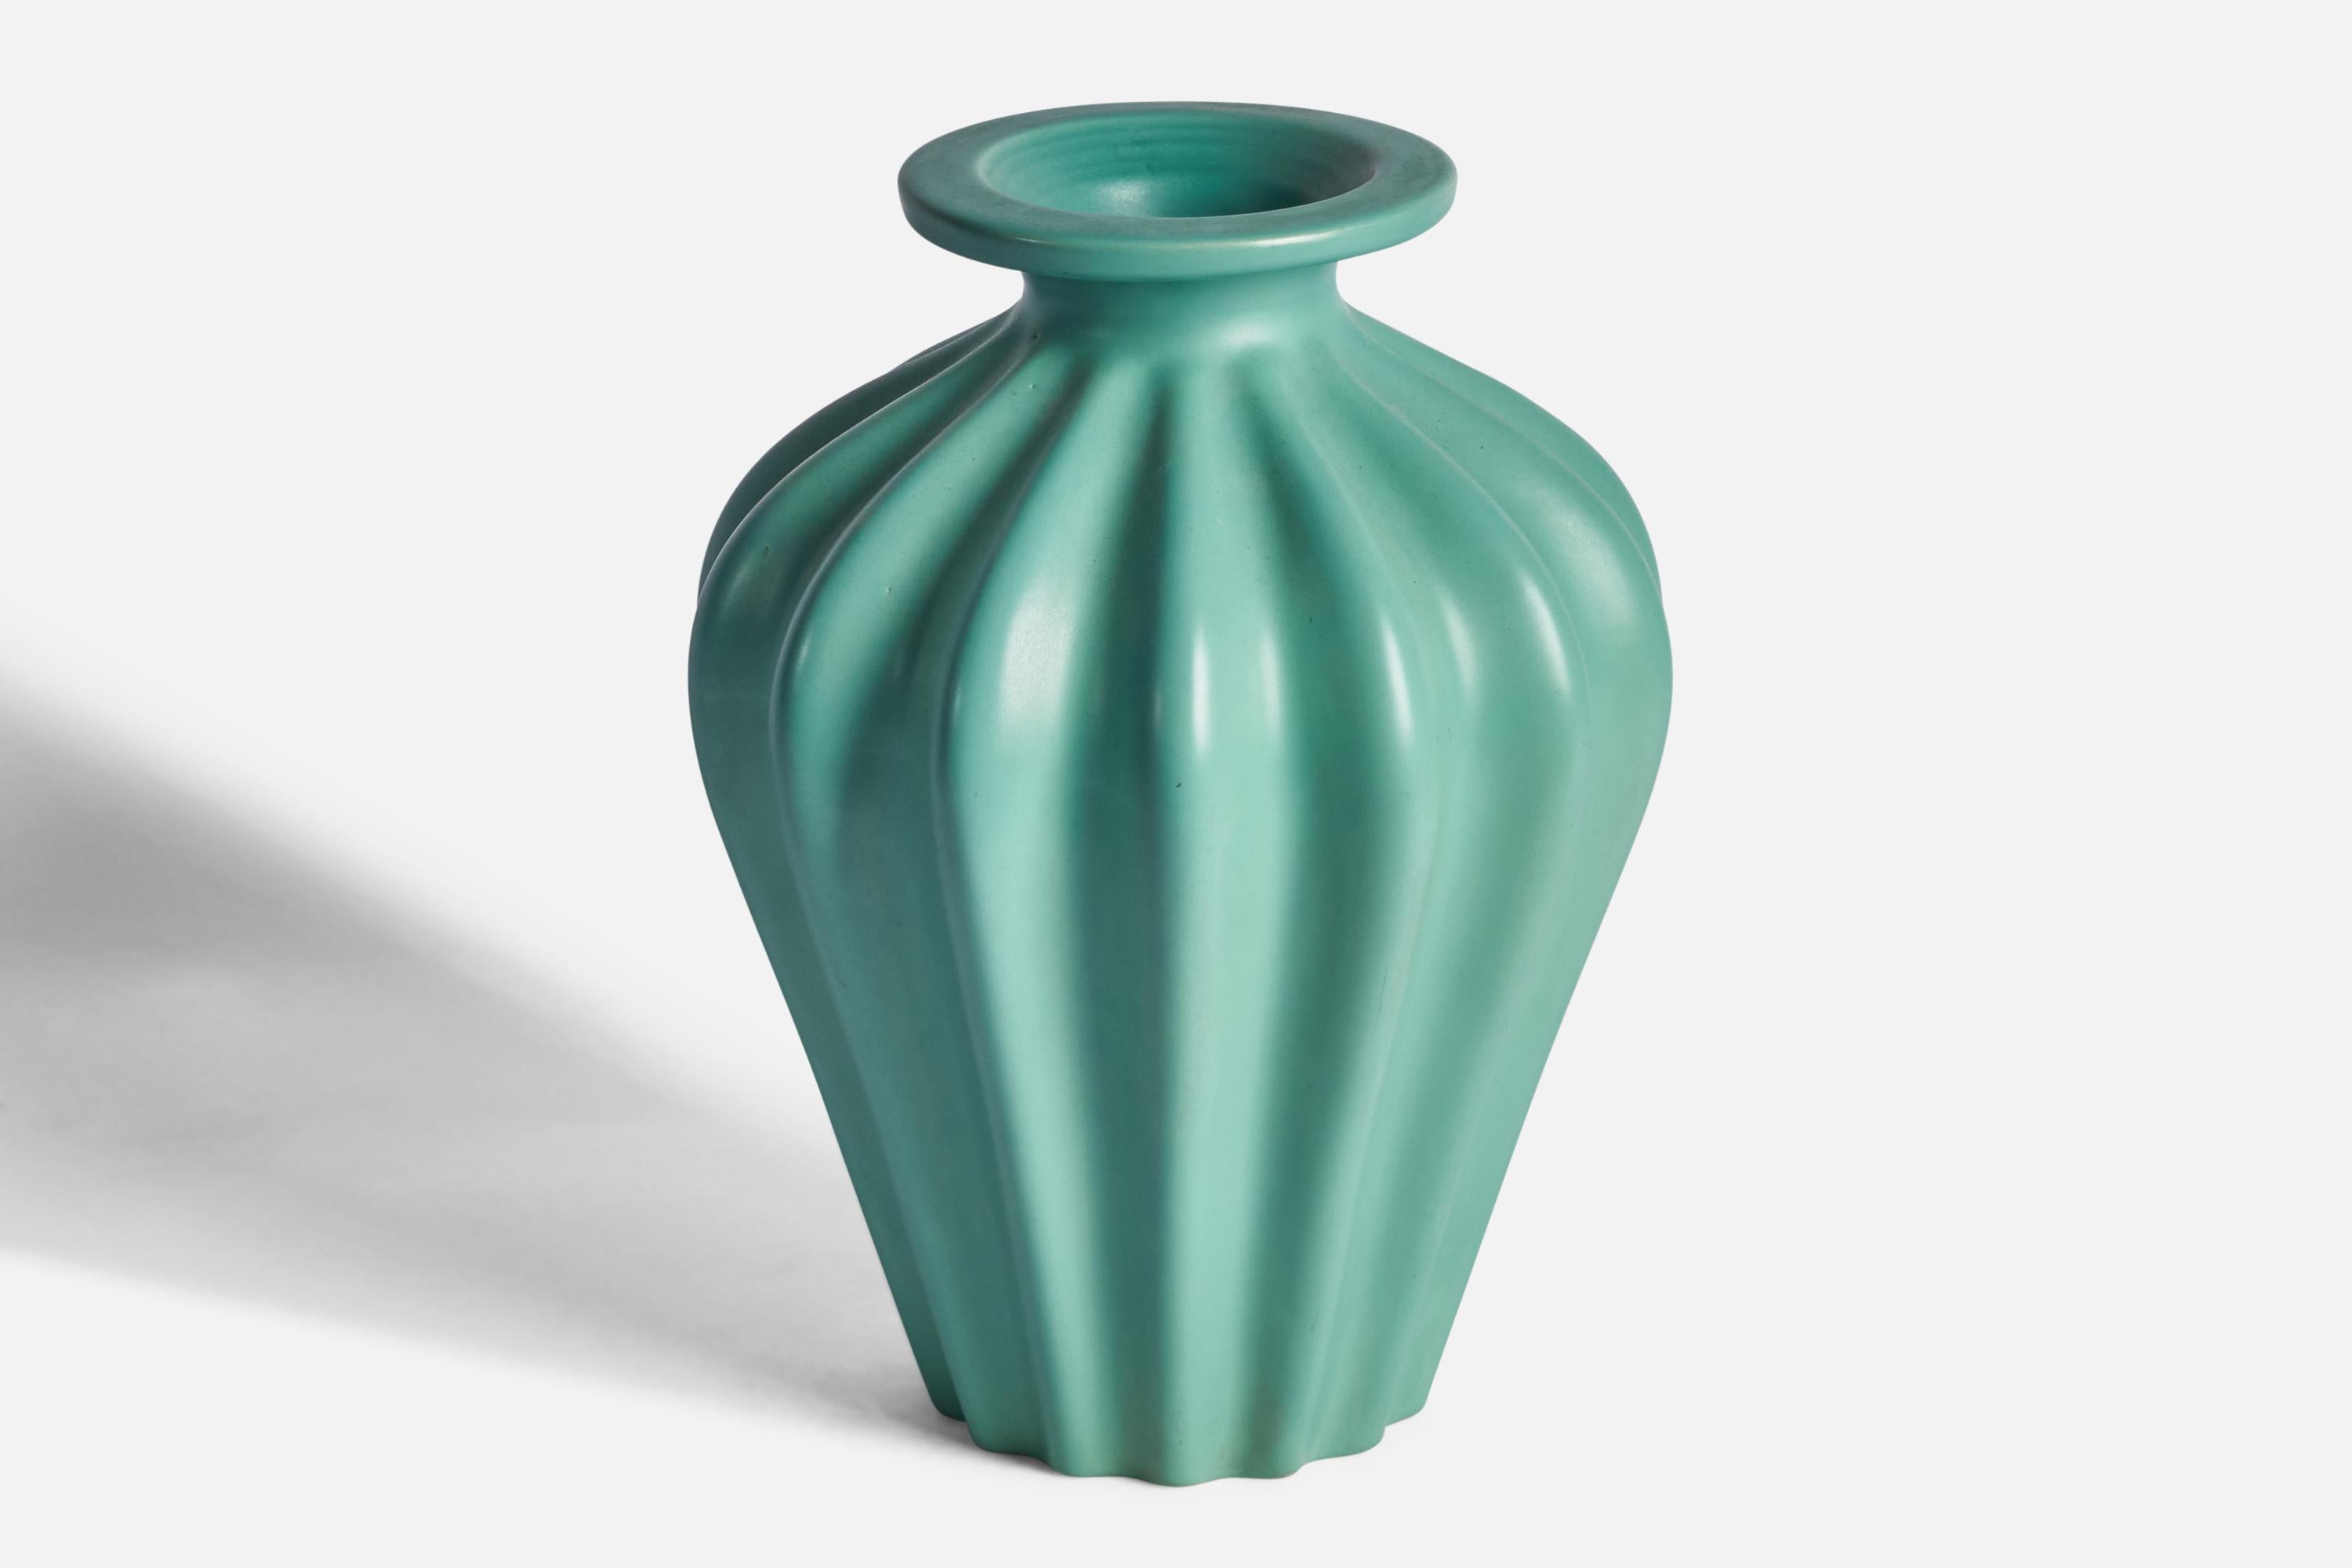 Un grand vase cannelé en faïence vert céladon, conçu par Ewald Dahlskog et produit par Bo Fajans, Suède, années 1930.